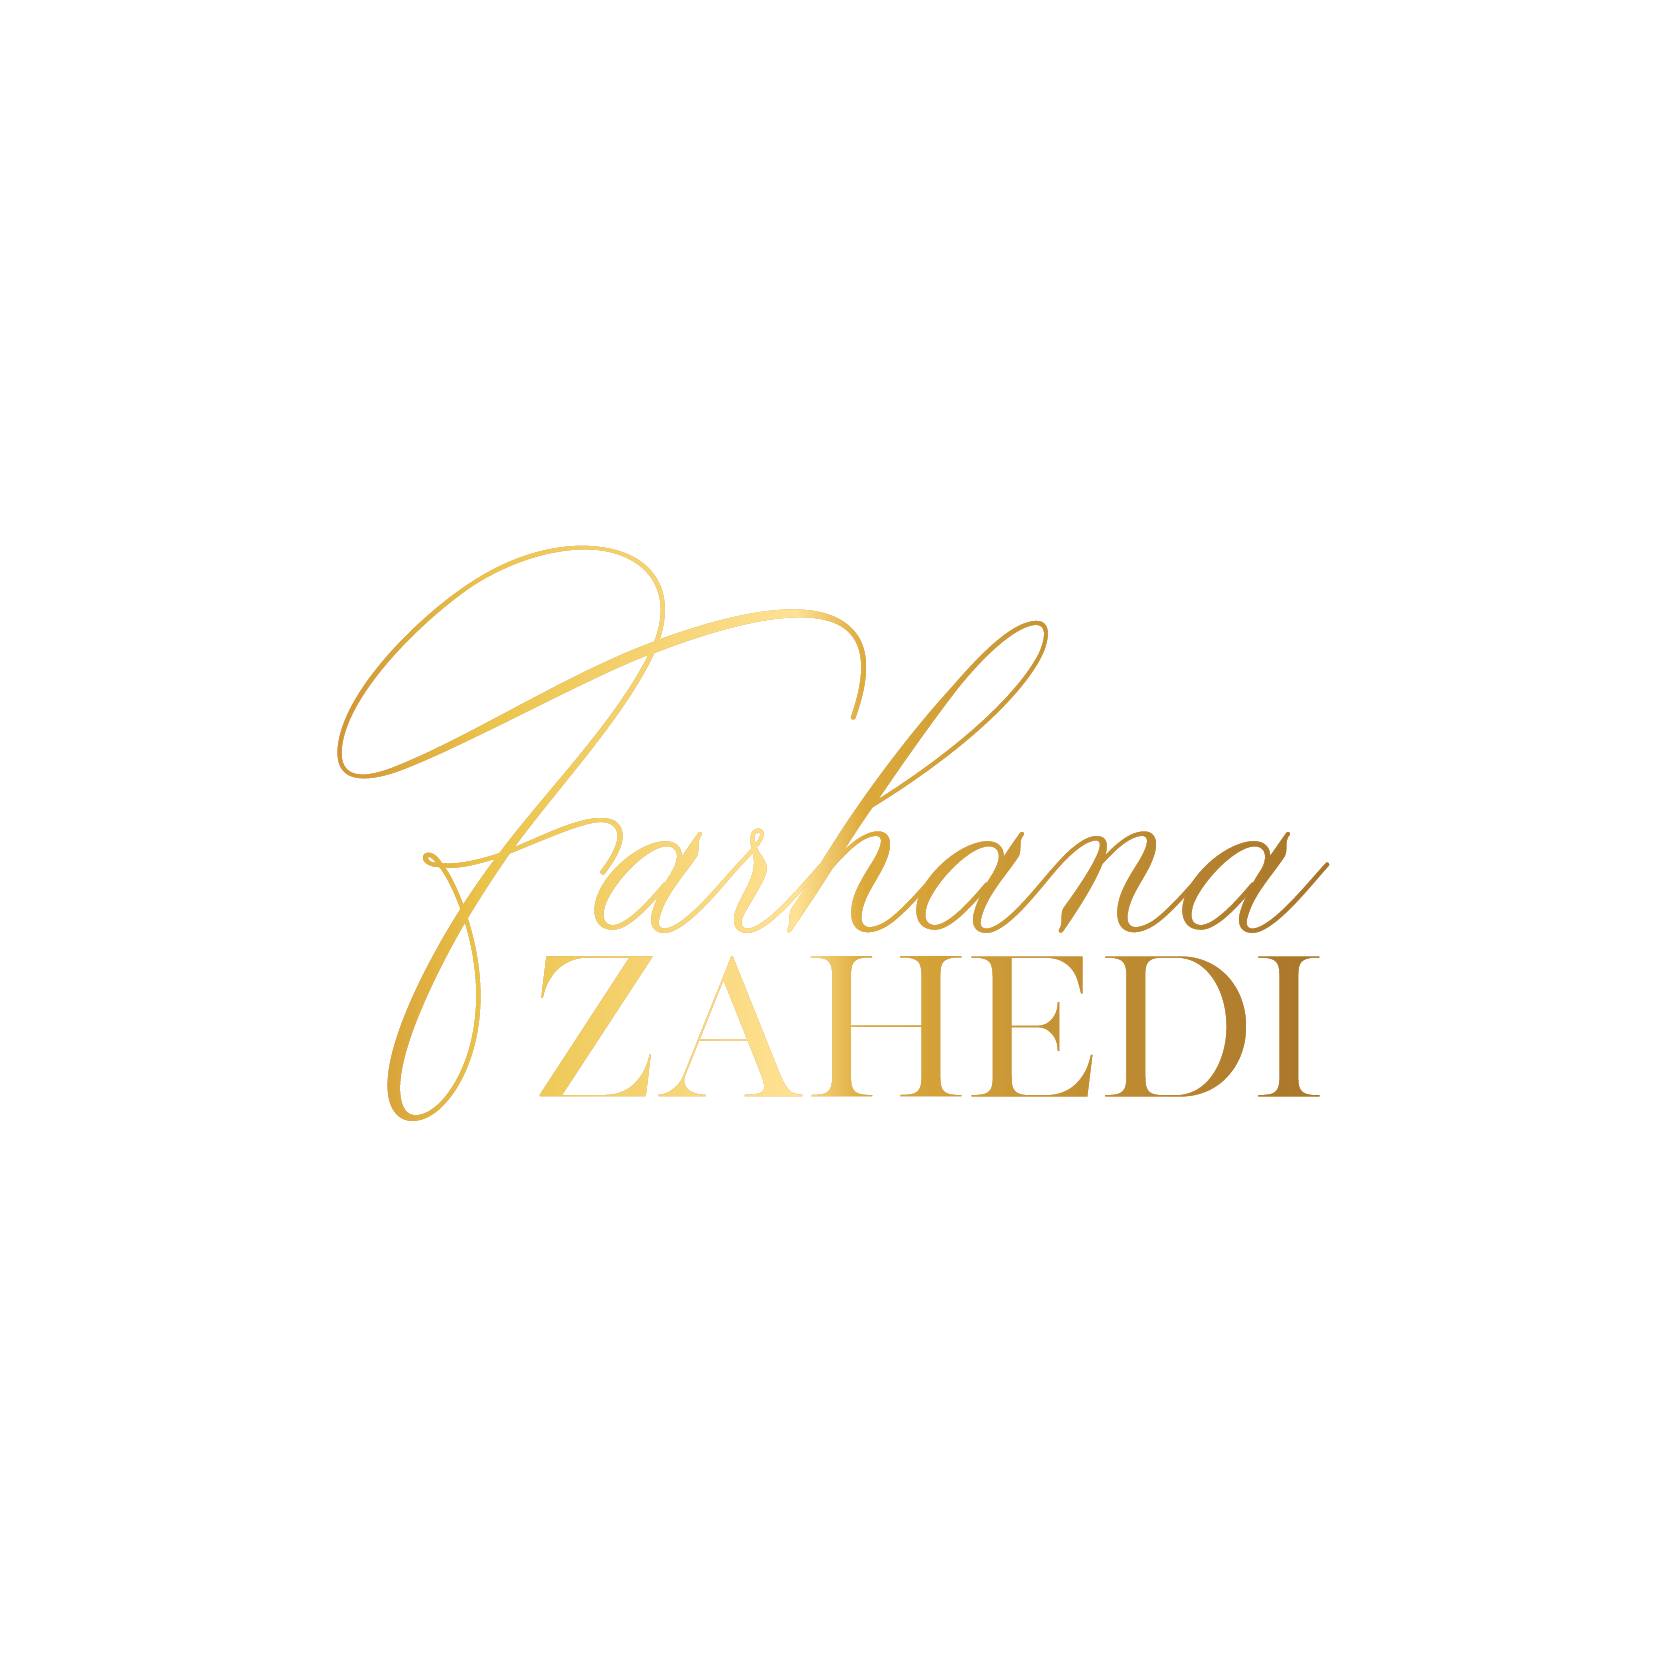 Farhana Zahedi